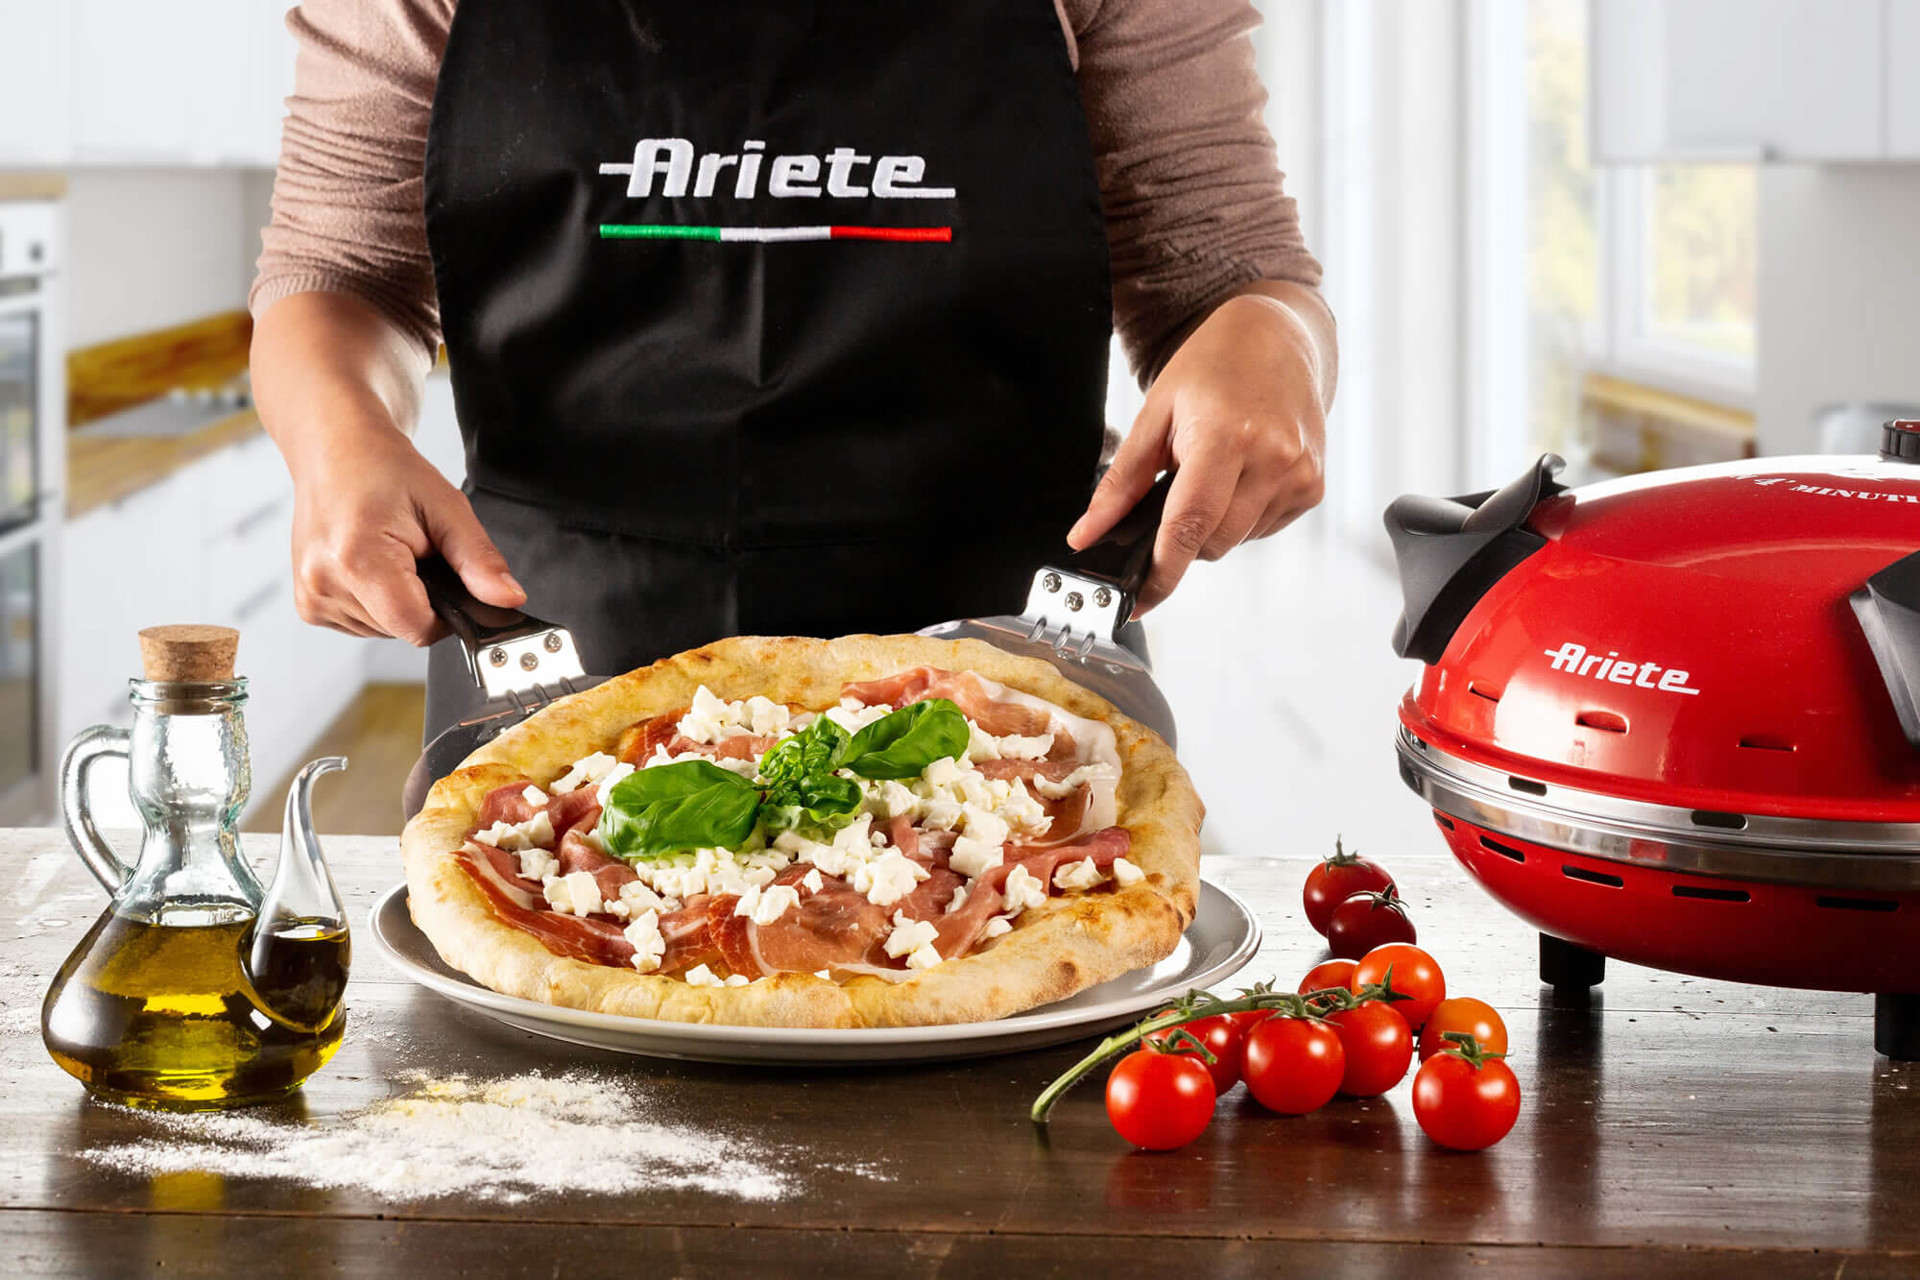 Prezzo TOP su questo forno pizza Ariete! (-14%) - SpazioGames